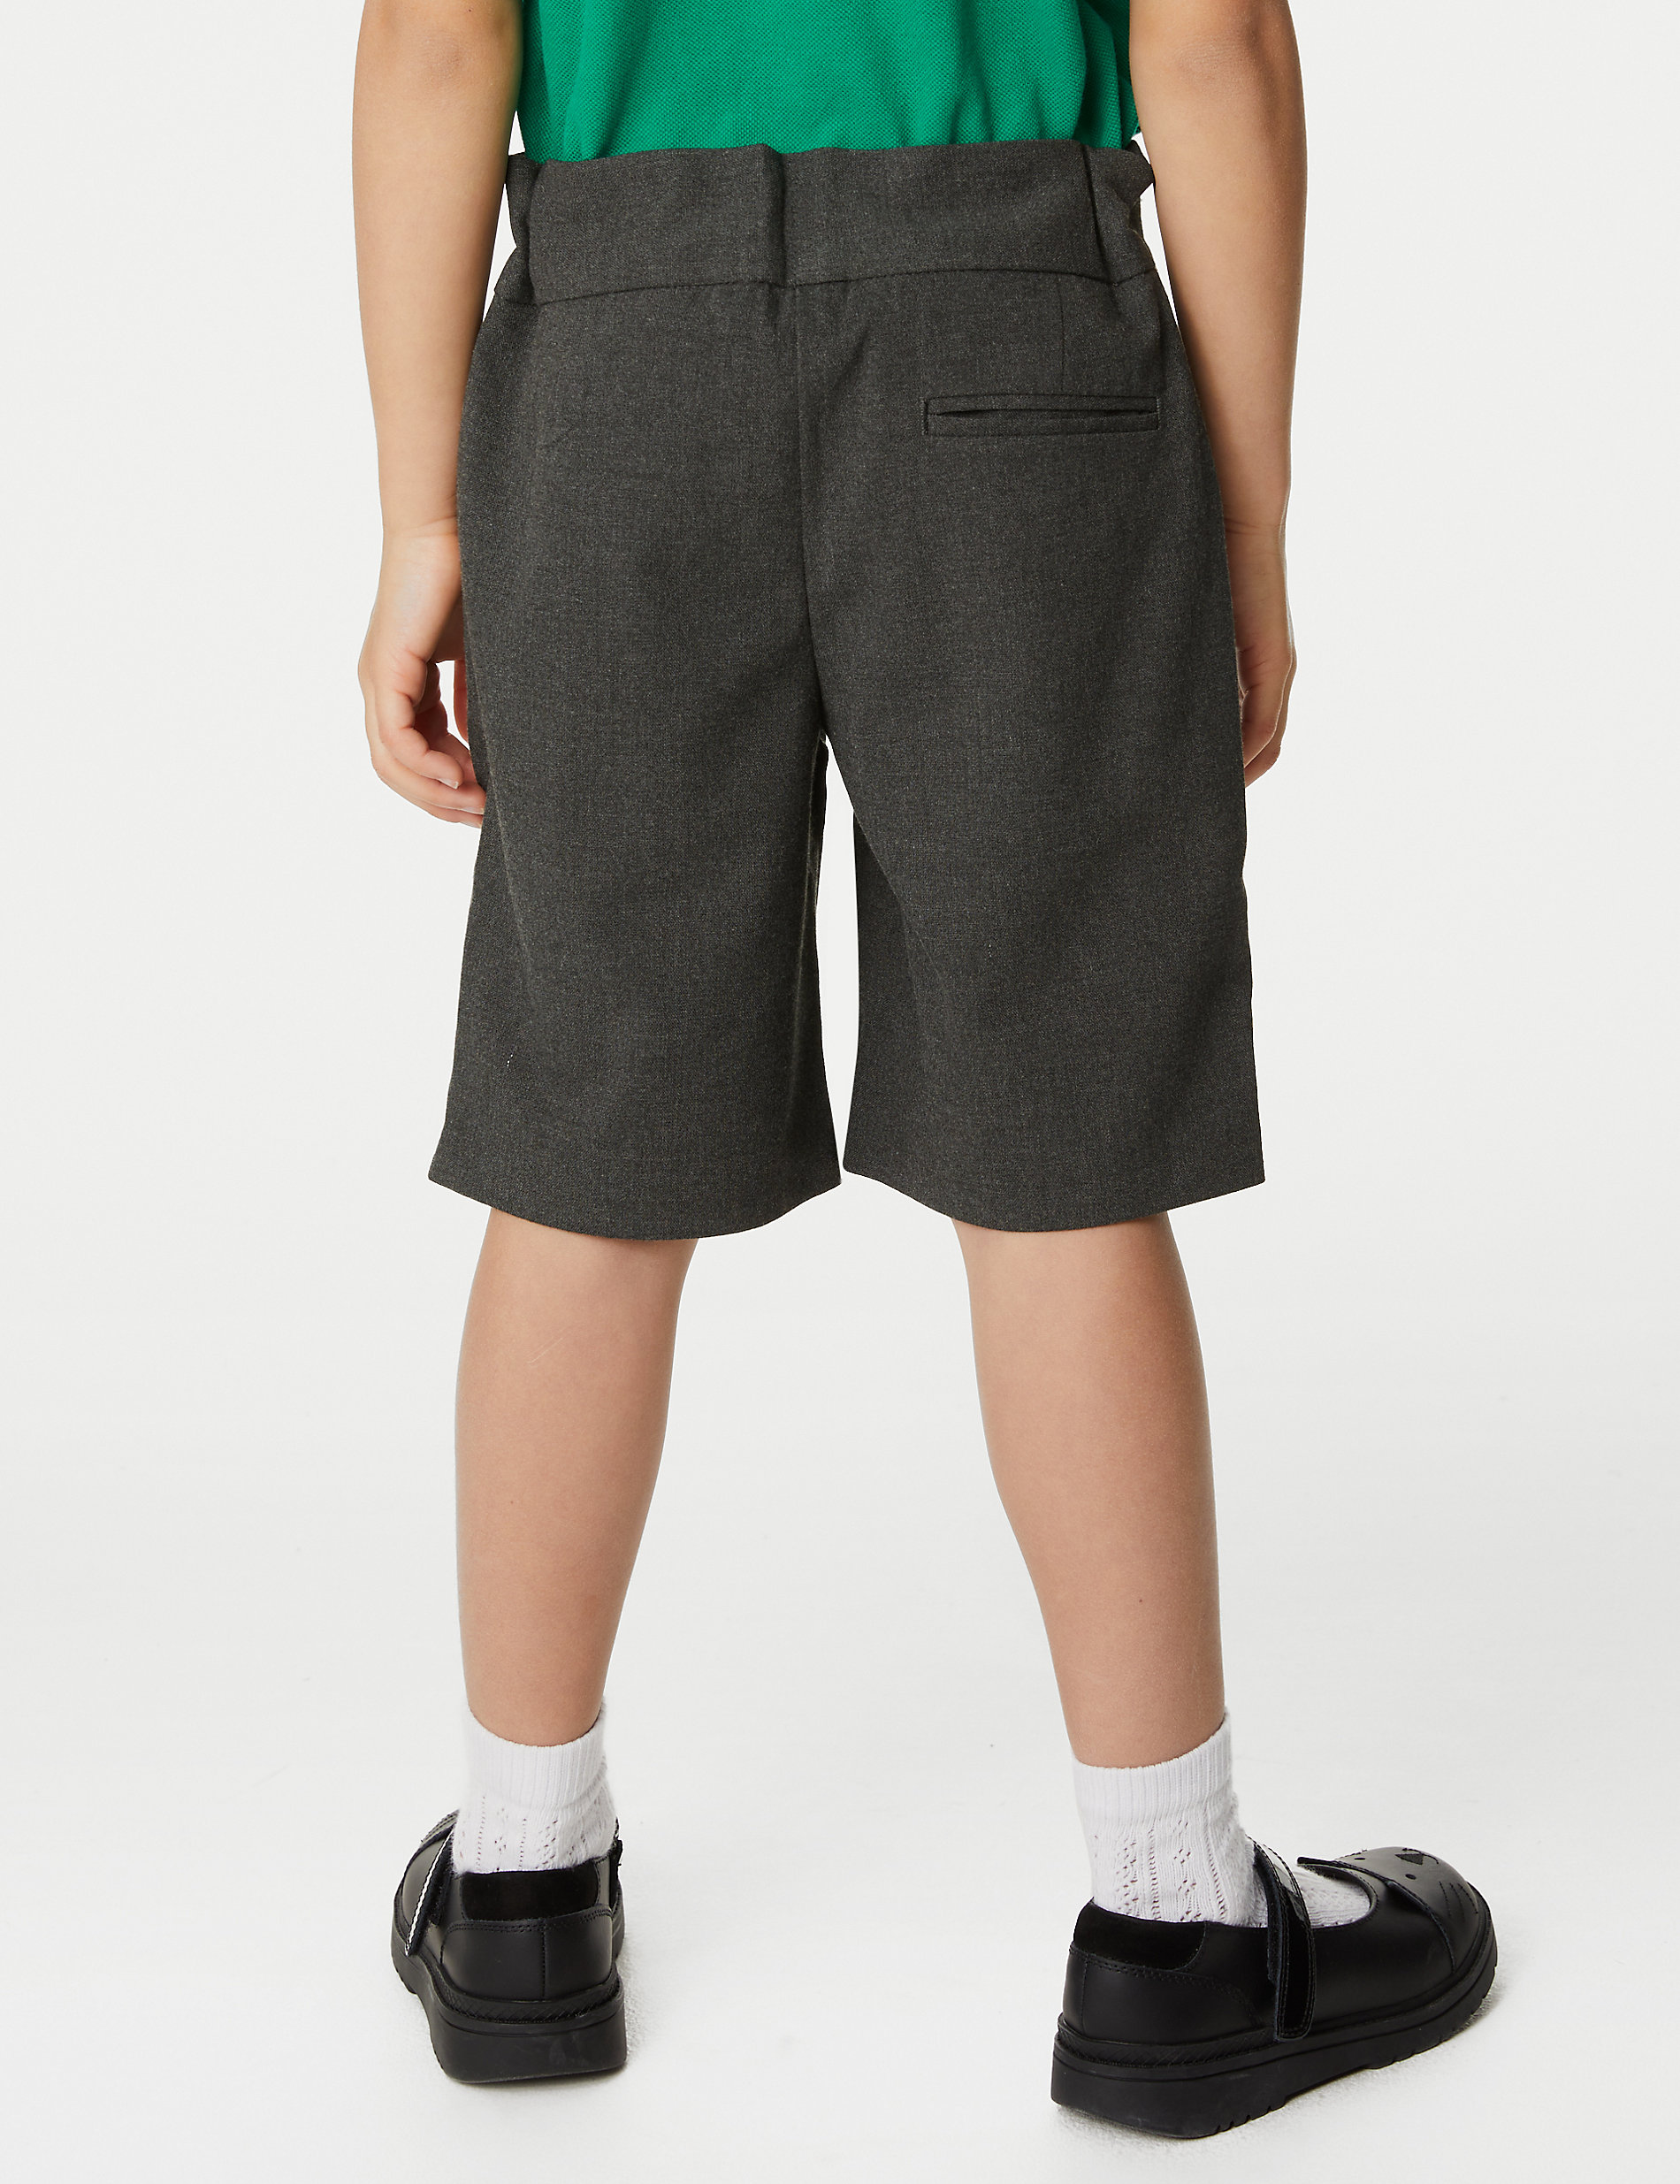 Pantalones cortos escolares de ajuste estándar para chicas (2-16&nbsp;años)